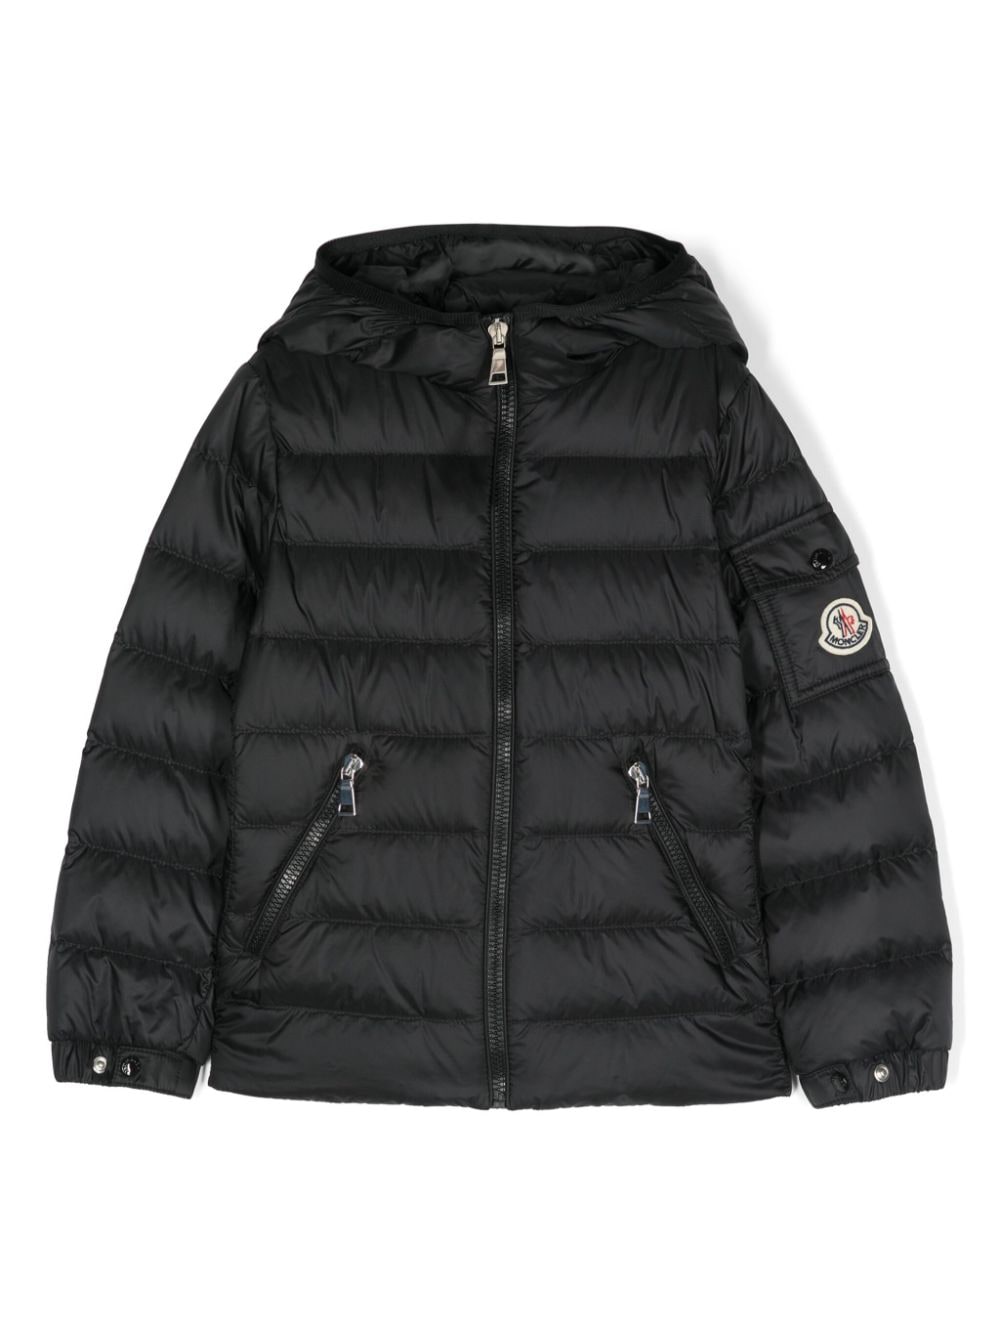 Image 1 of Moncler Enfant quilted hooded jacket